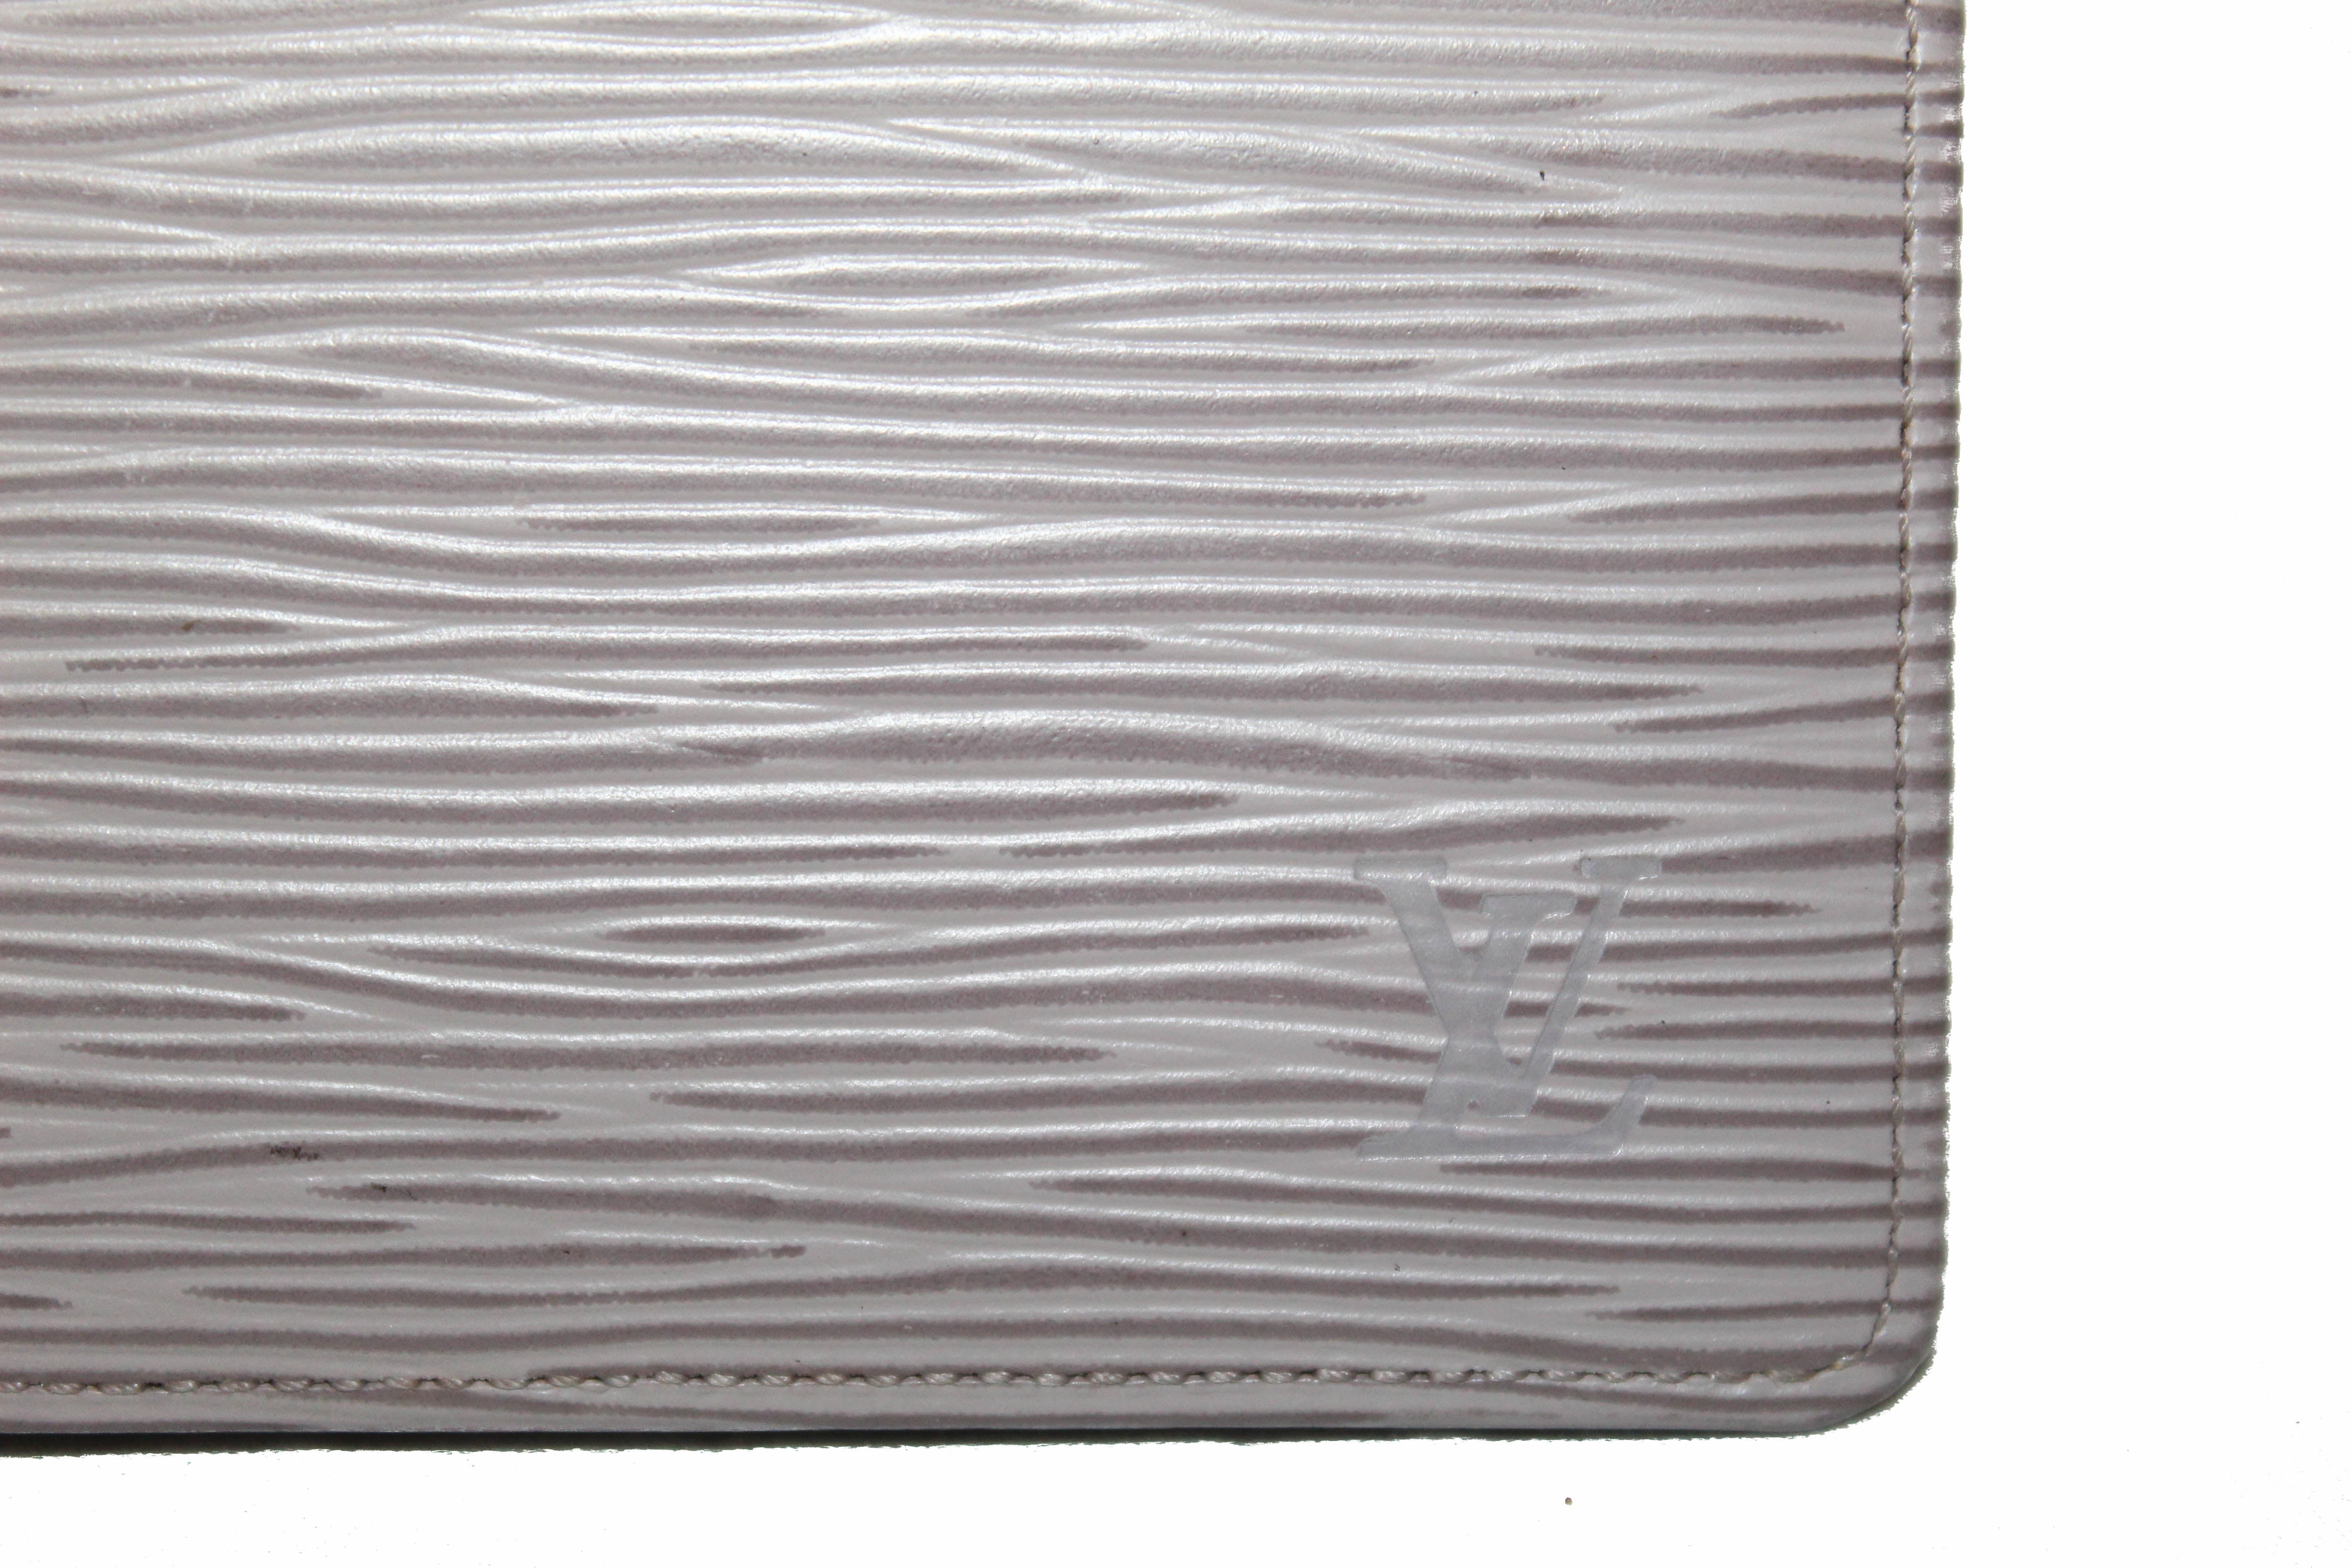 Authentic Louis Vuitton Lavender Epi Leather Bill-Fold Marco Wallet